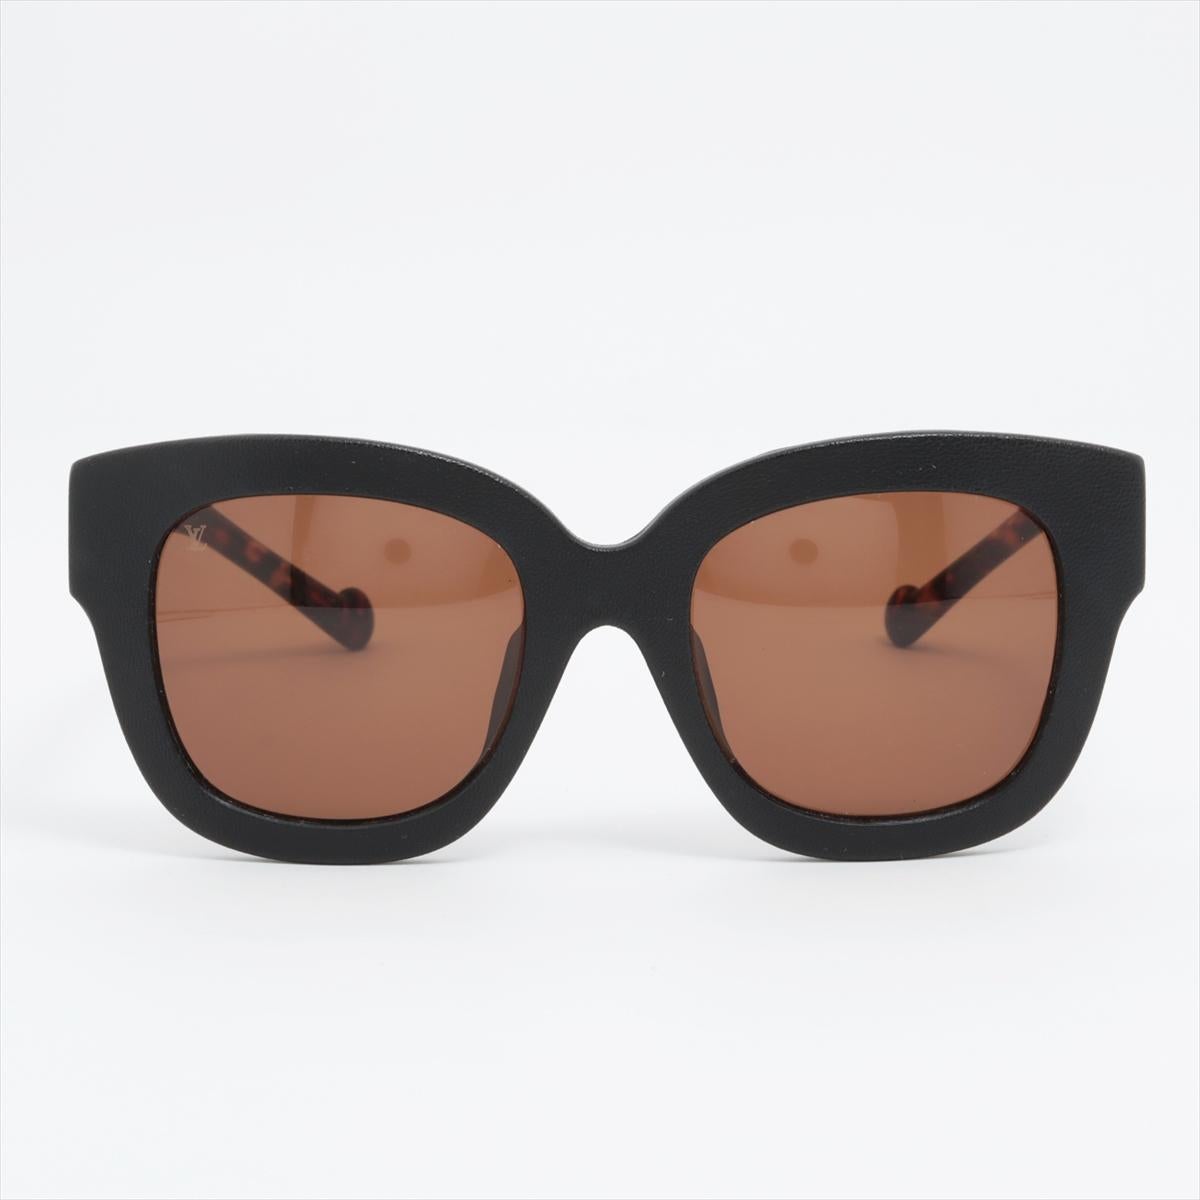 Les lunettes de soleil Louis Vuitton en plastique, couleur tortue foncée, sont un accessoire intemporel et sophistiqué pour toutes les occasions. Fabriquées en plastique de haute qualité, ces lunettes de soleil présentent une combinaison de montures